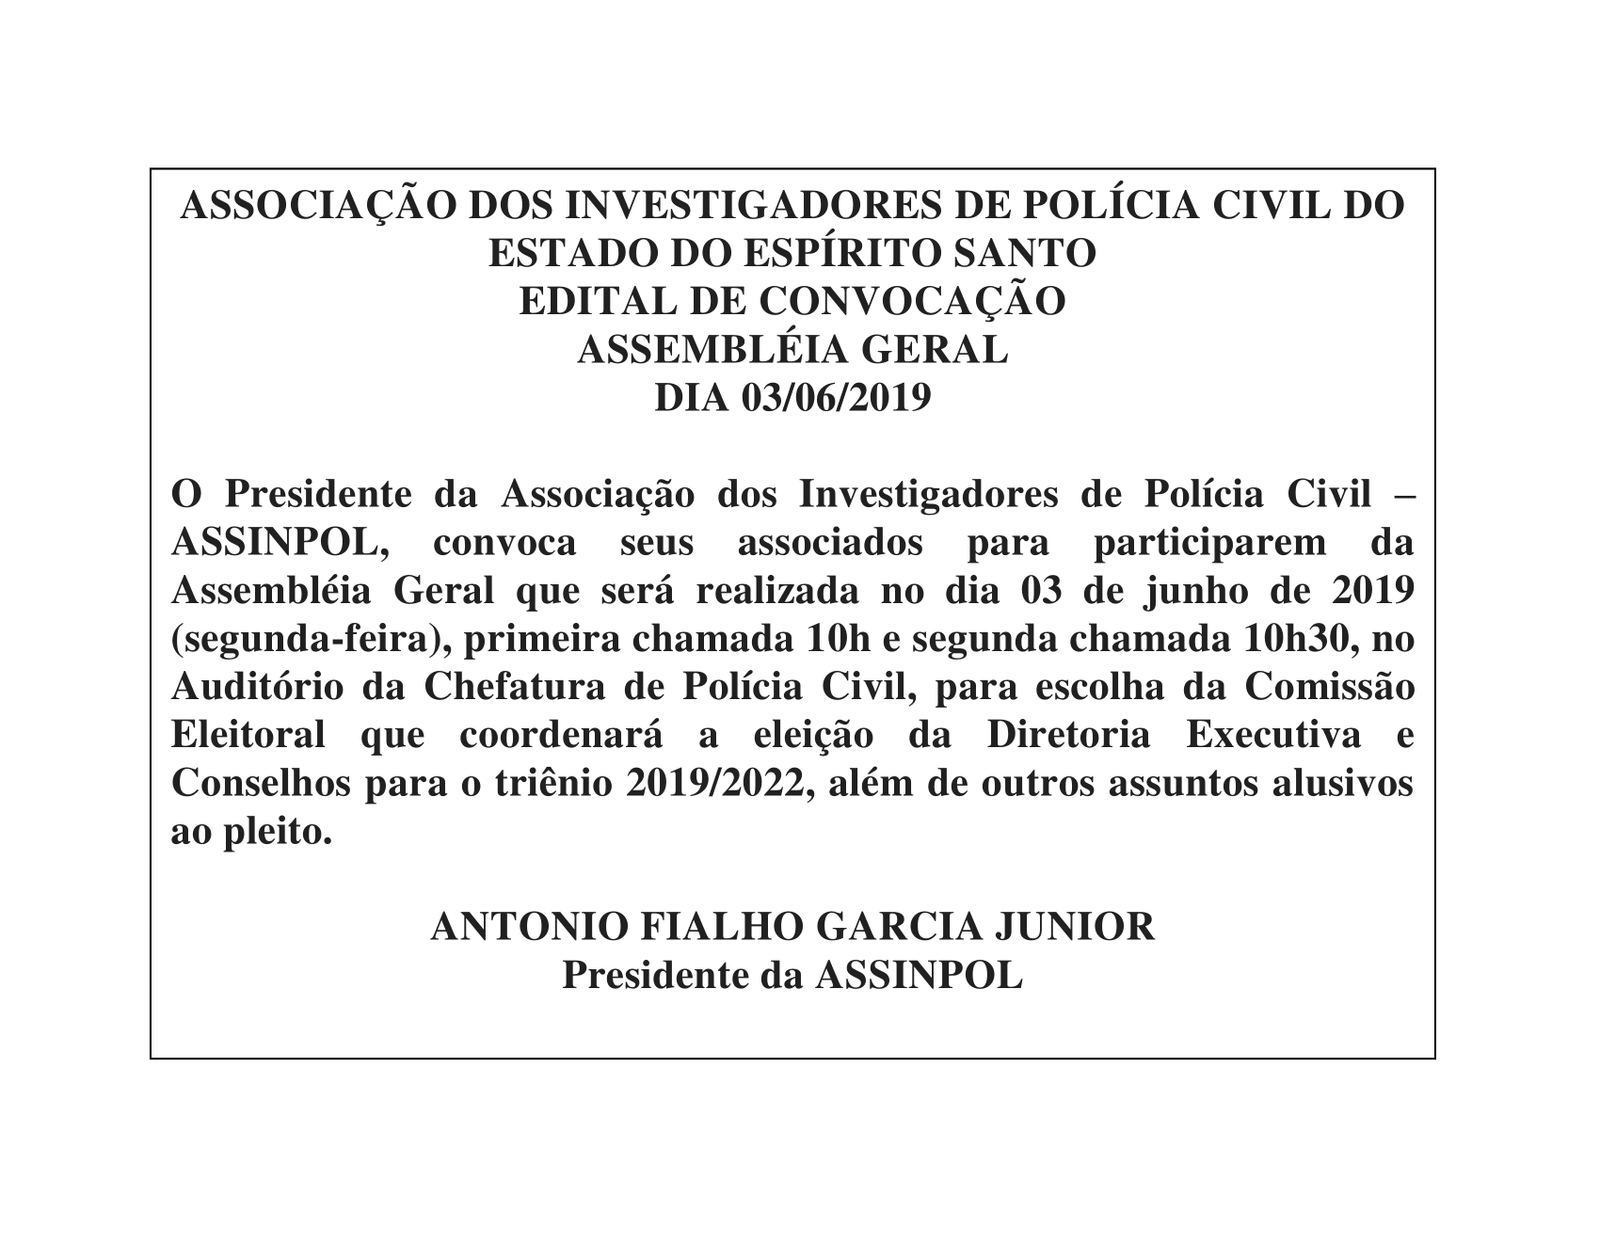 EDITAL DE CONVOCAÇÃO ASSEMBLÉIA GERAL DIA 03/06/2019 ASSINPOL